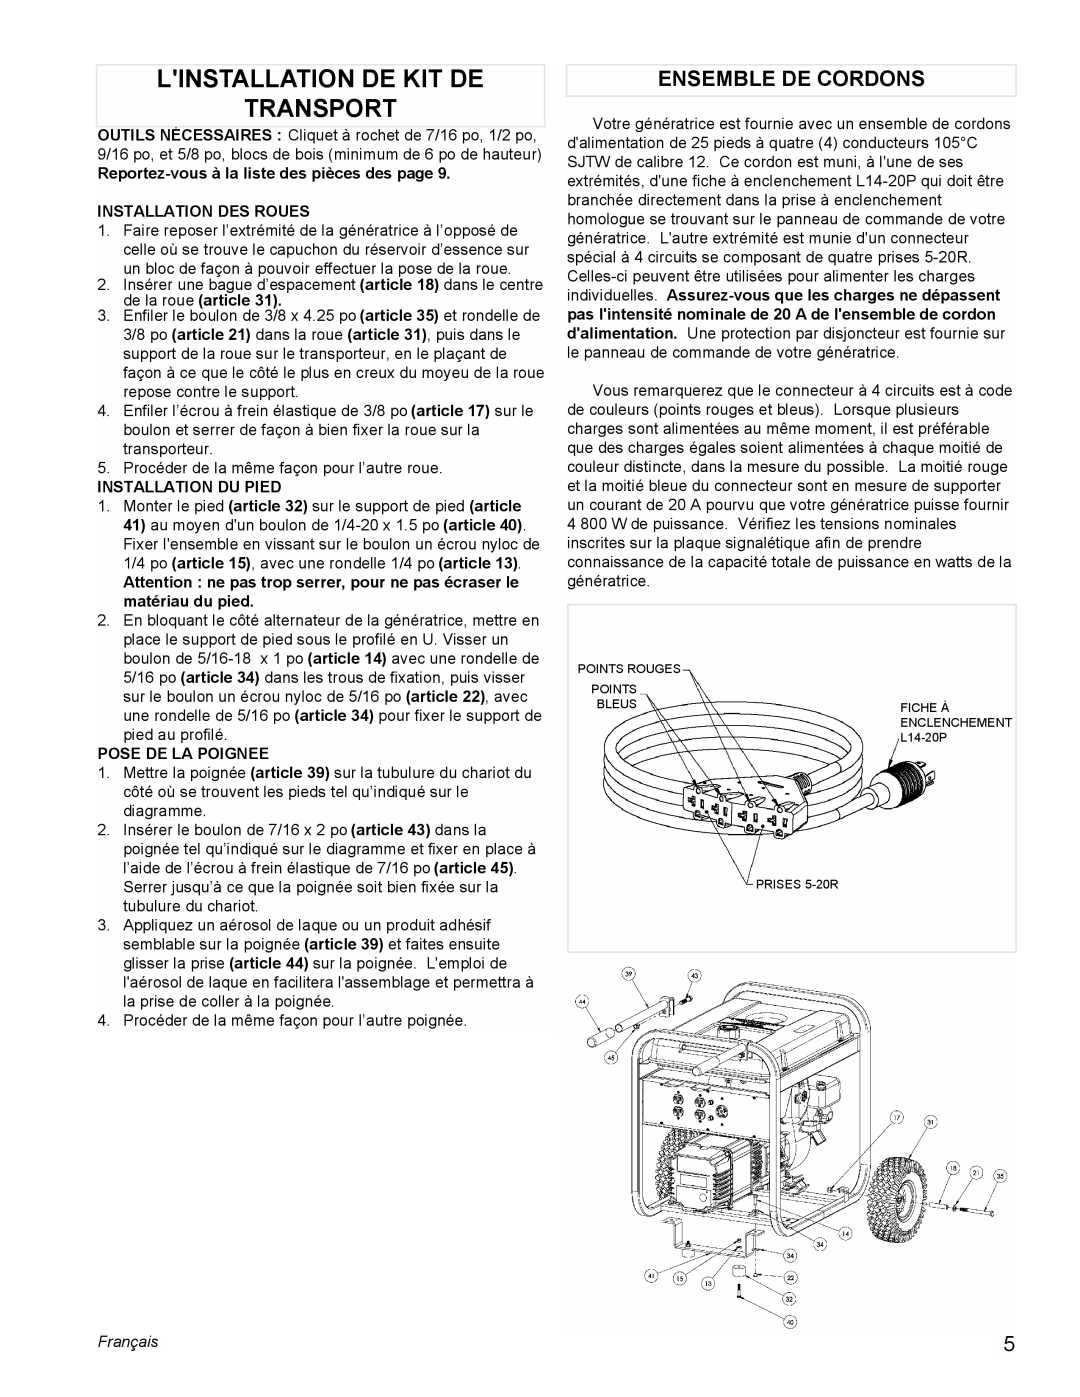 Powermate PM0525501 manual Linstallation De Kit De Transport, Ensemble De Cordons, Français 